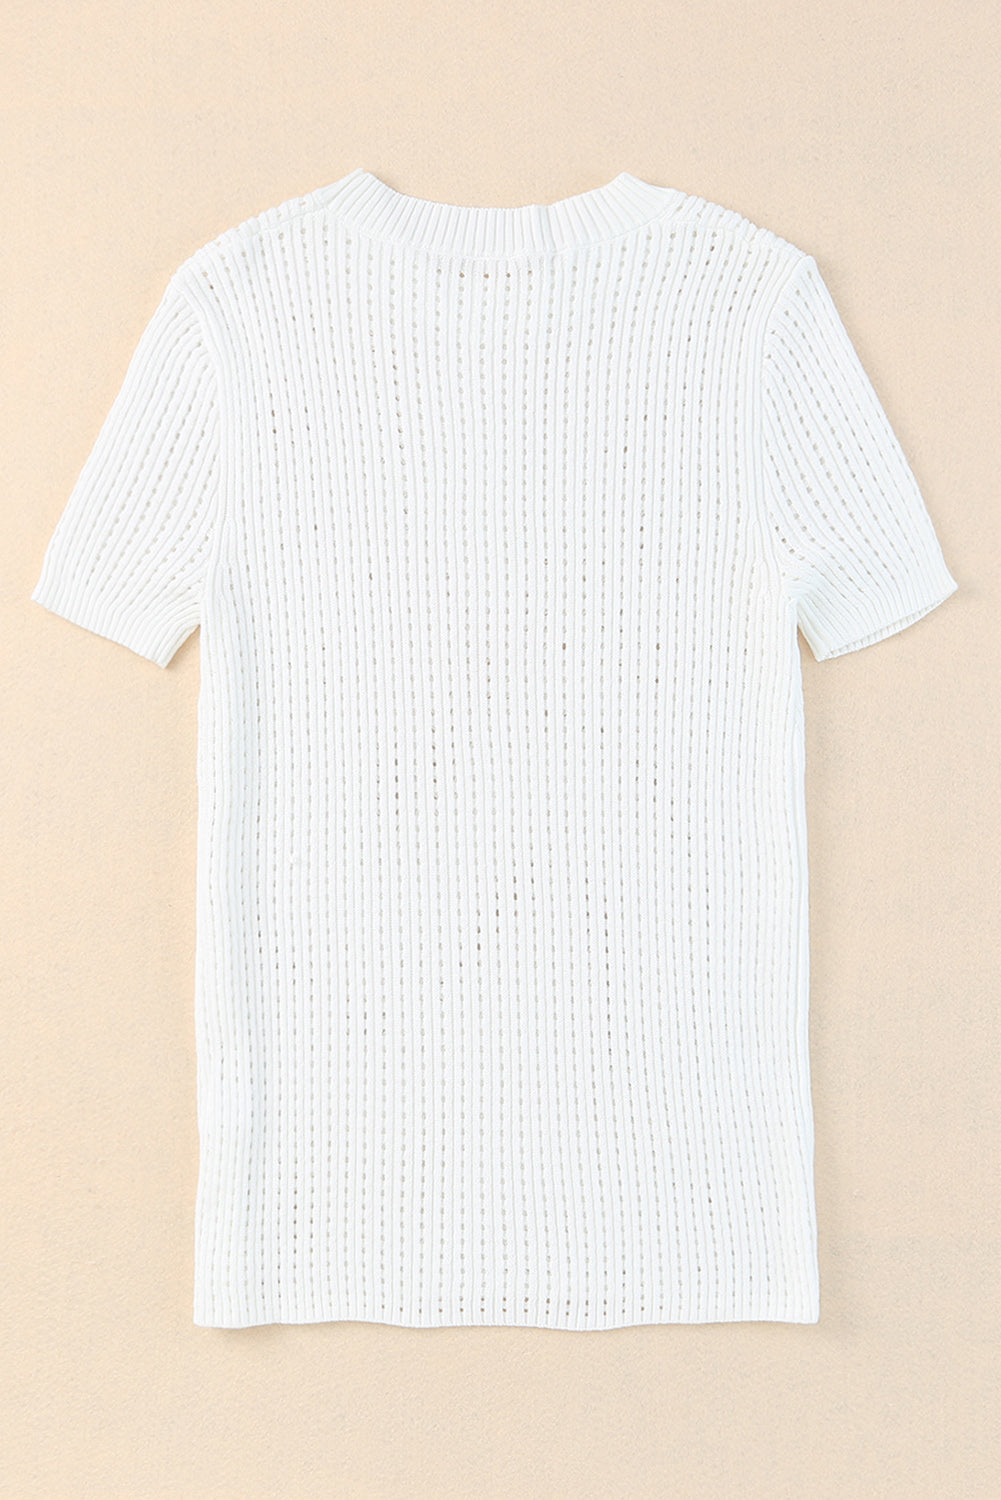 T-shirt blanc tricoté à manches courtes et ajouré